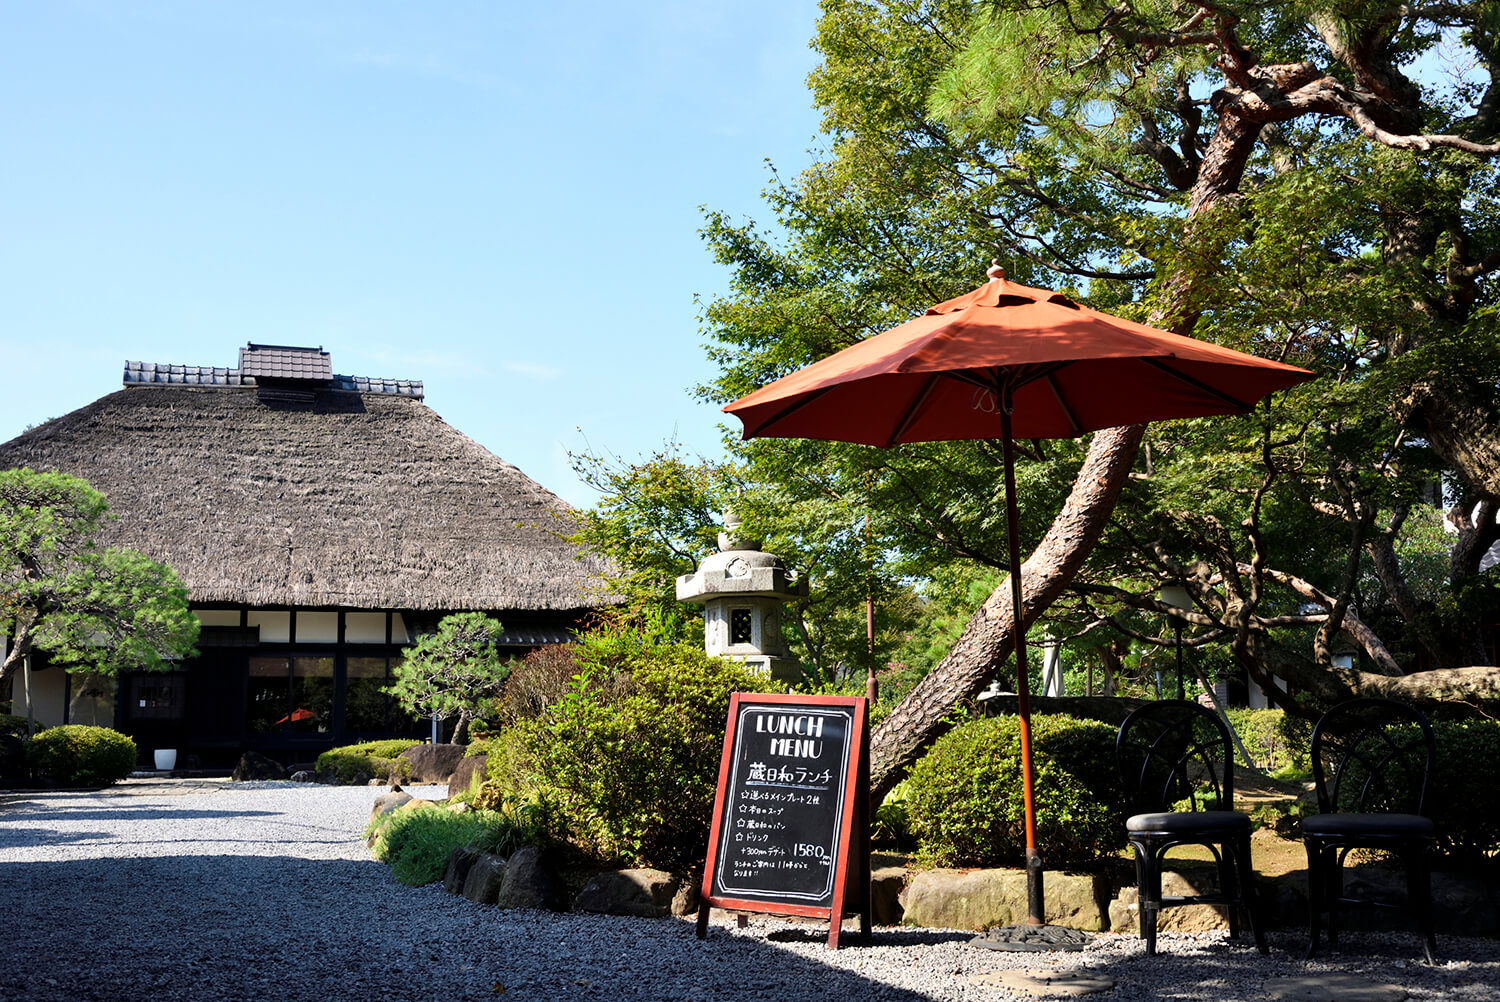 モミジやアカマツ、サルスベリが茂る自然豊かな日本庭園